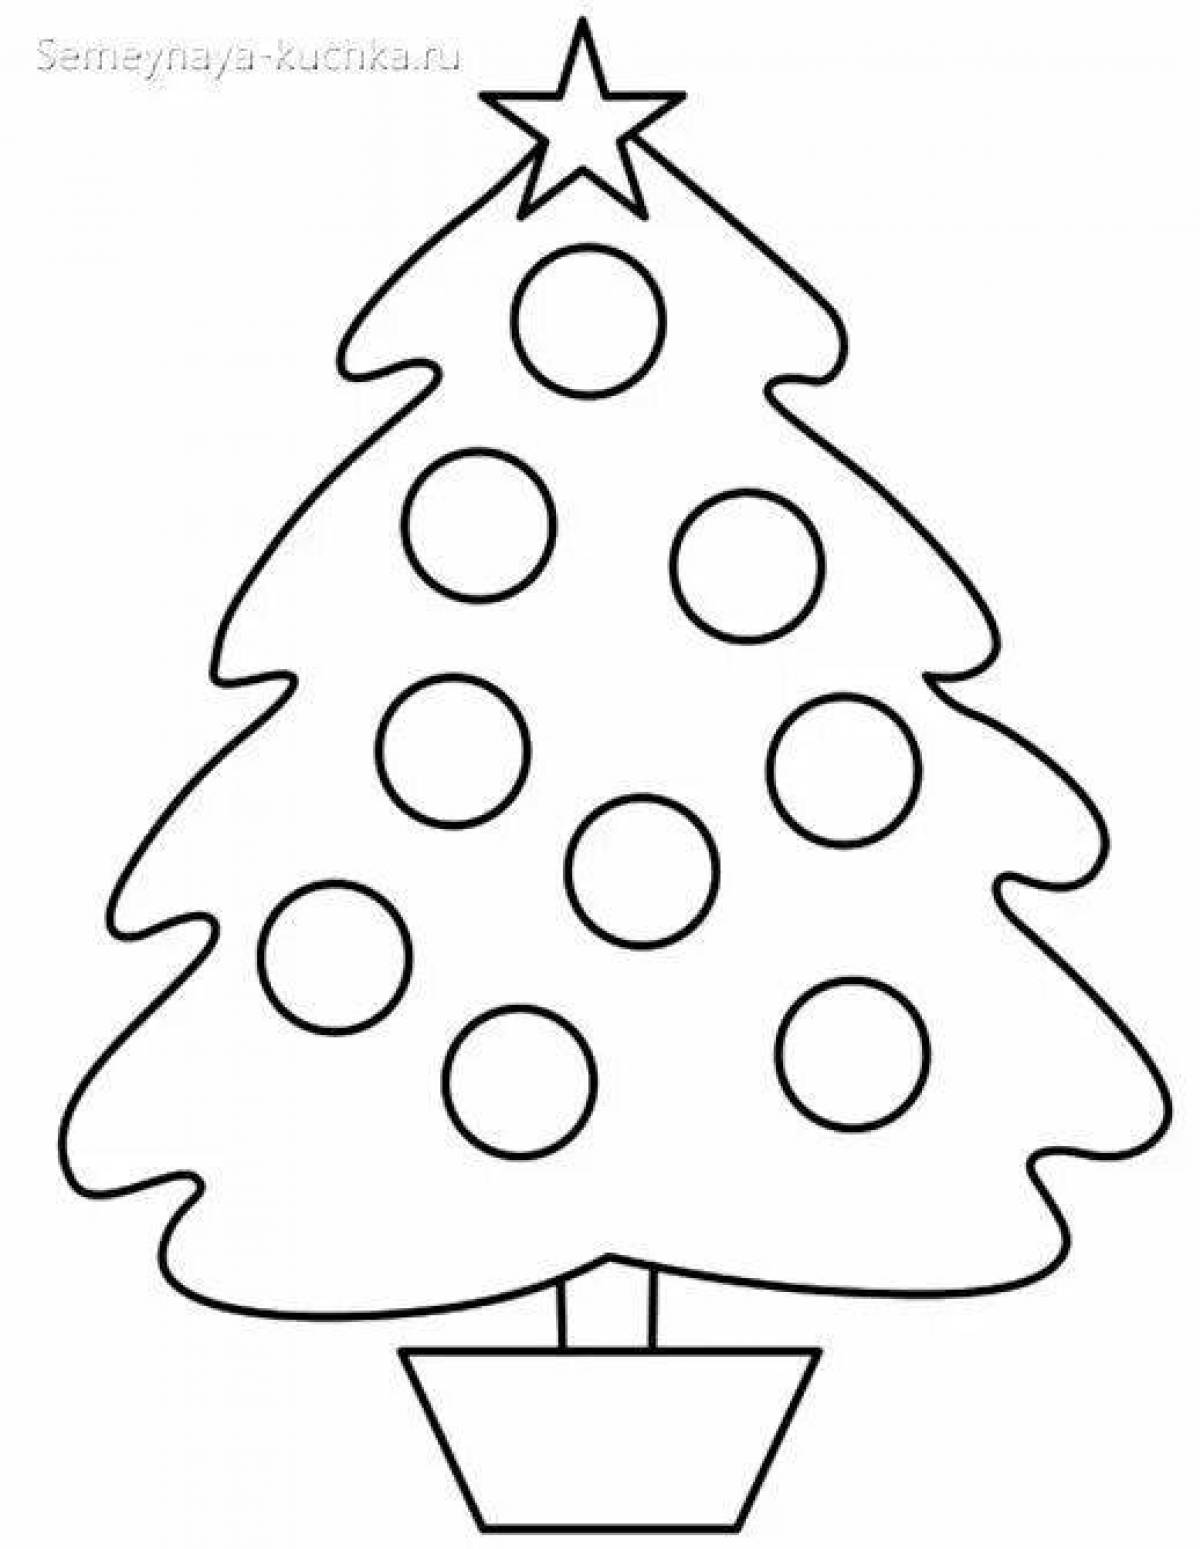 Изысканный шаблон раскраски рождественской елки